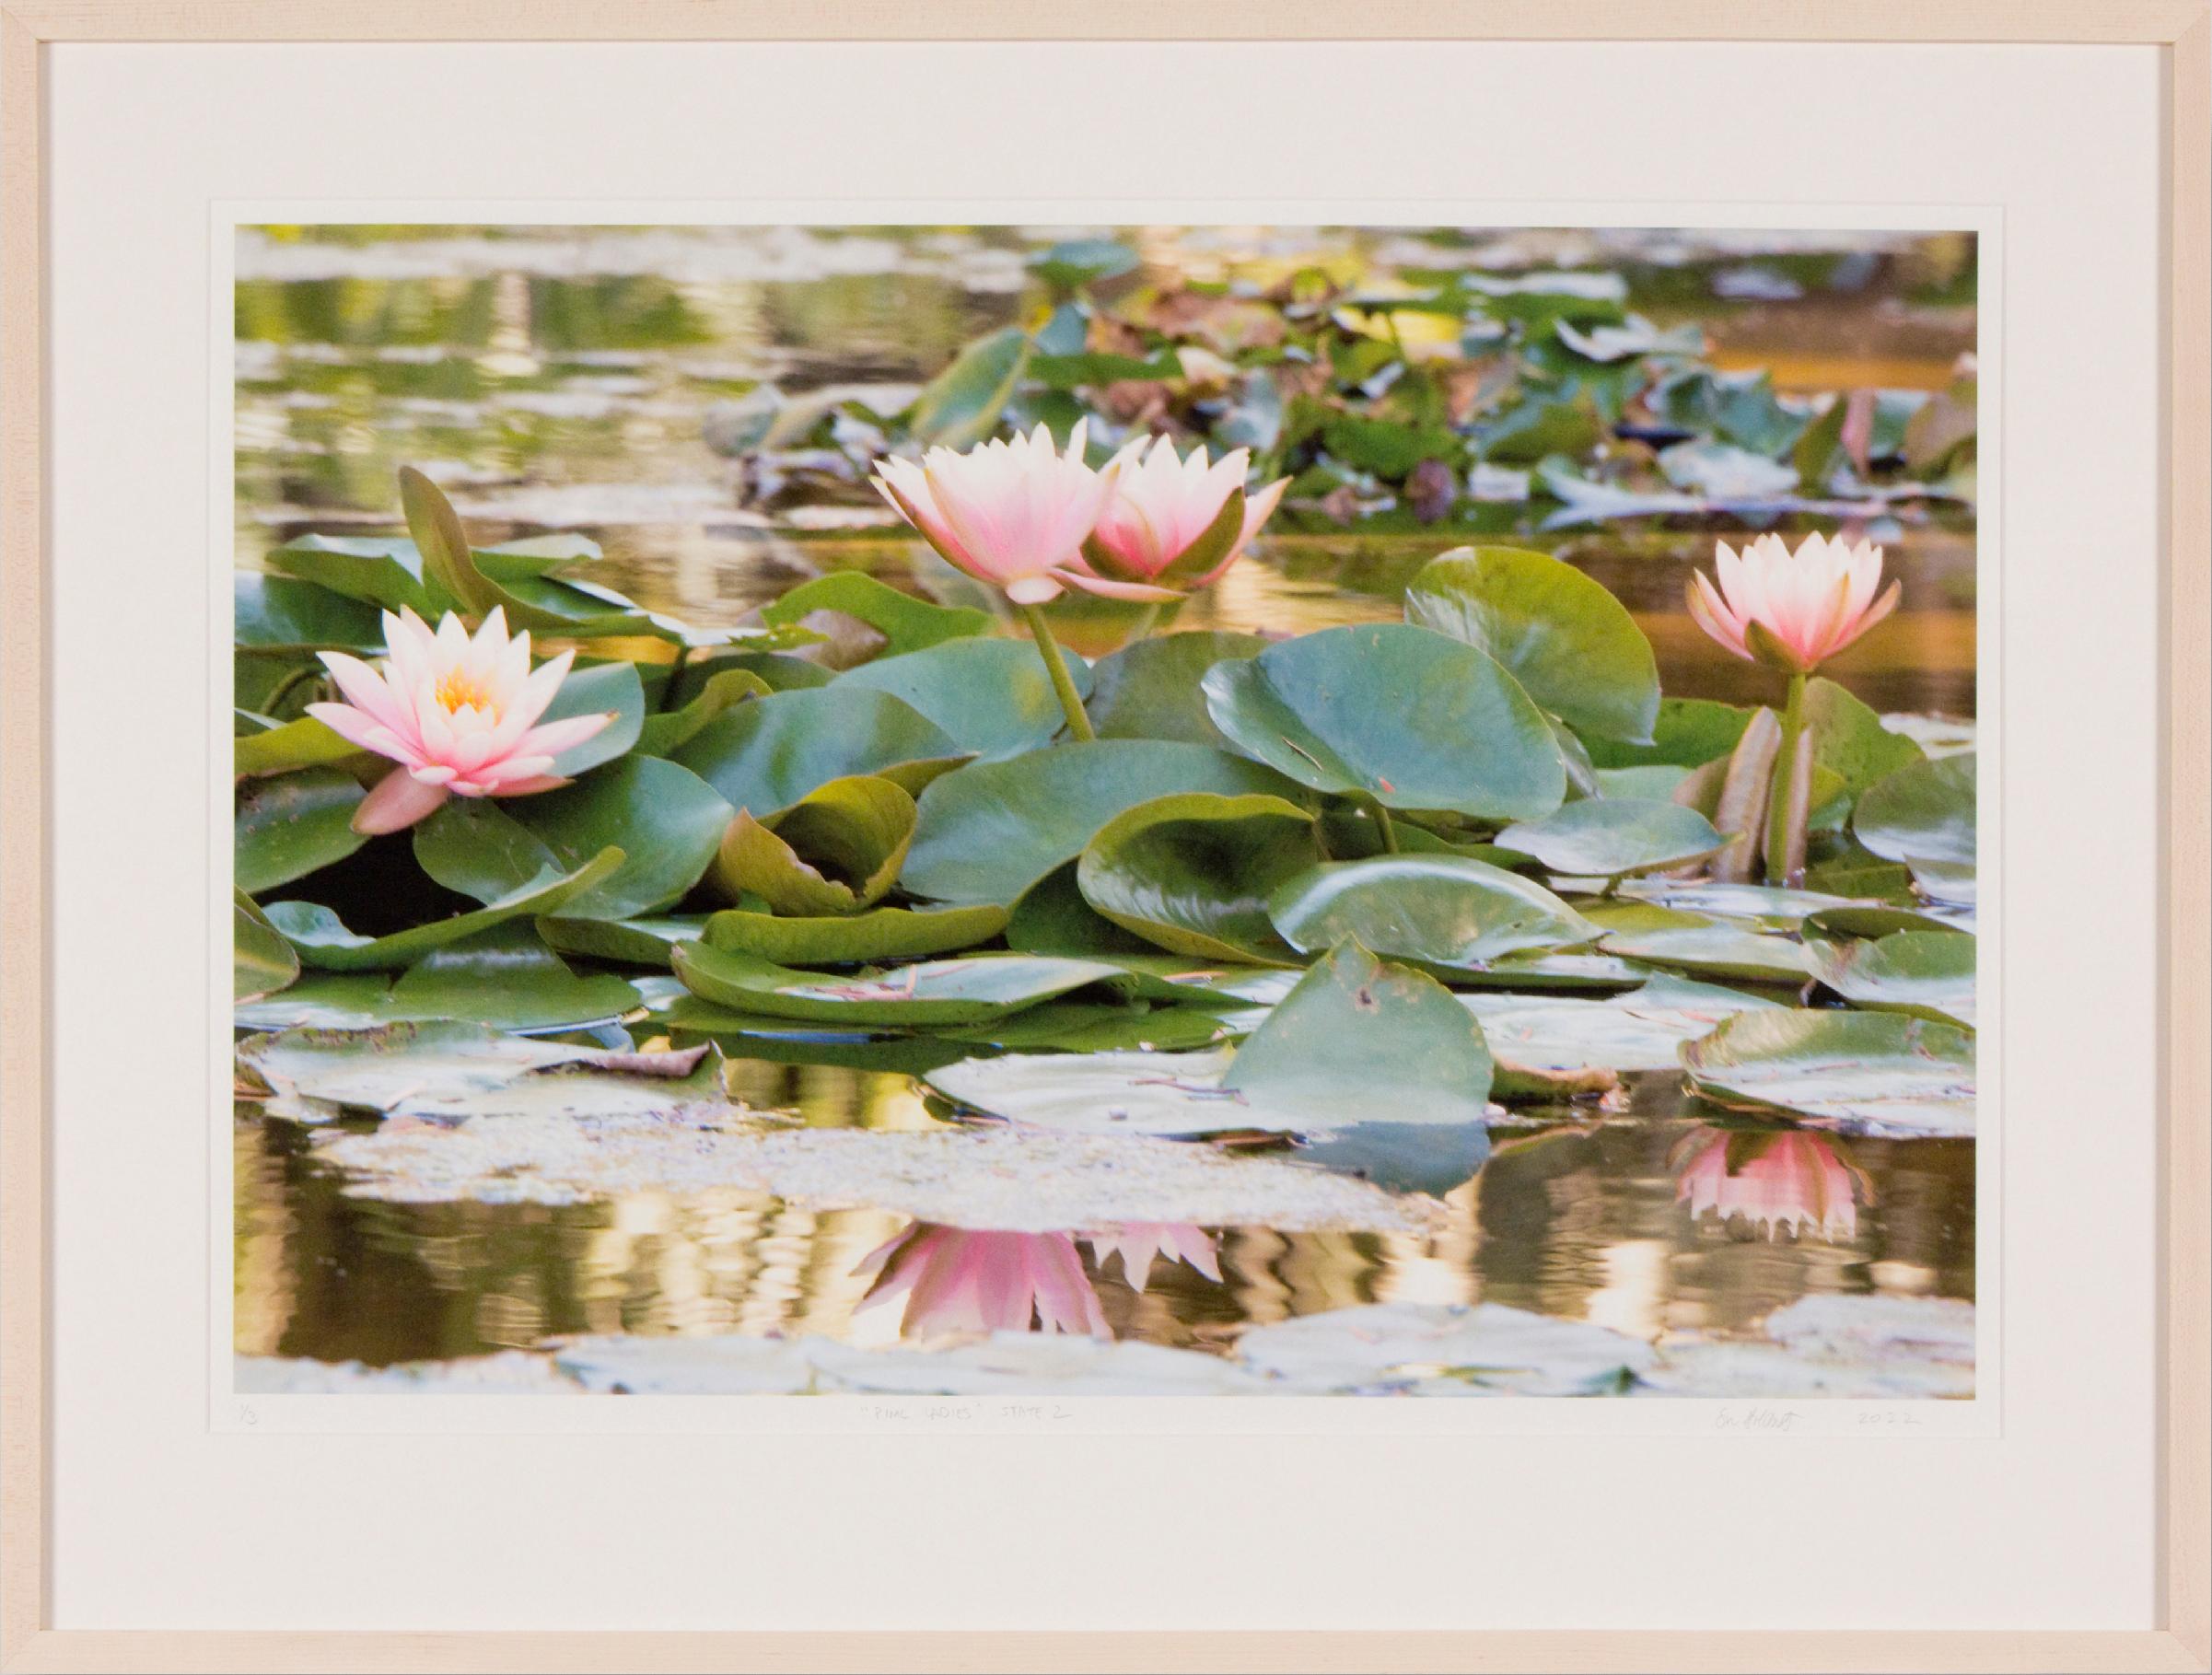 PINK LADIES STATE 2 – Blumen-Kunstfotografie / Wasserlilie / botanischer Garten